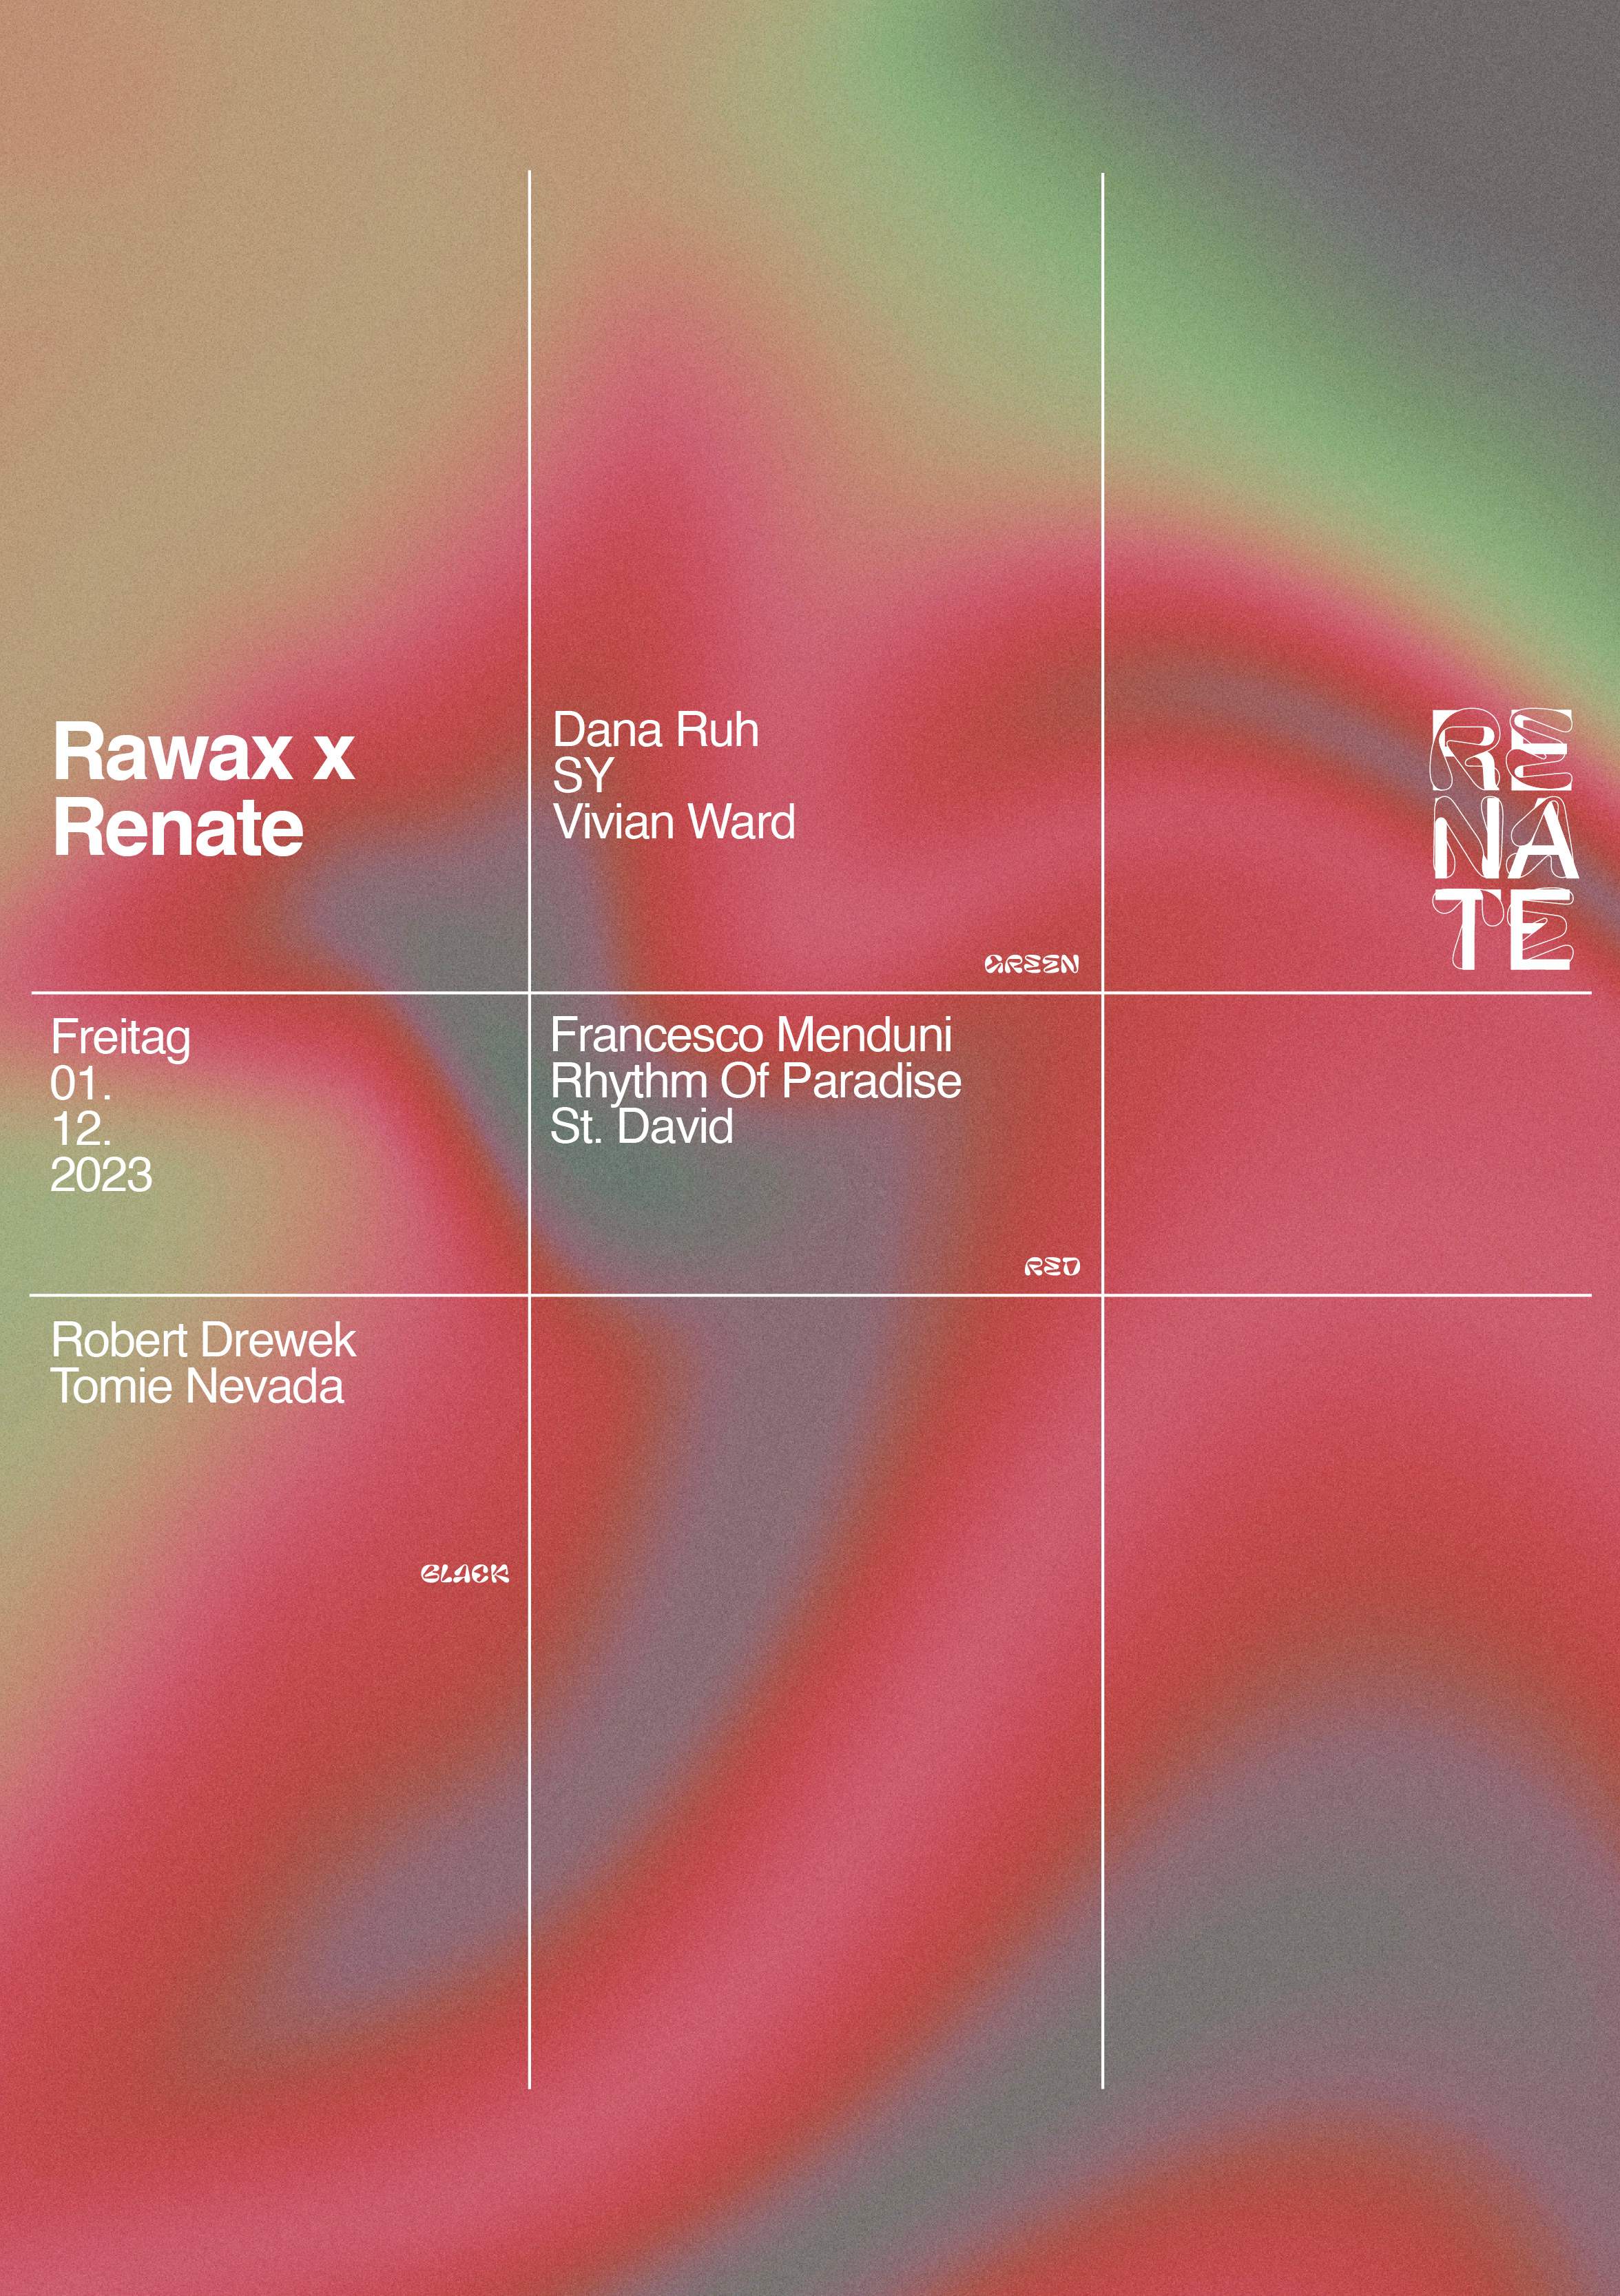 Rawax x Renate w/ Robert Drewek, Dana Ruh, SY, St. David, Vivian Ward + more - Página frontal